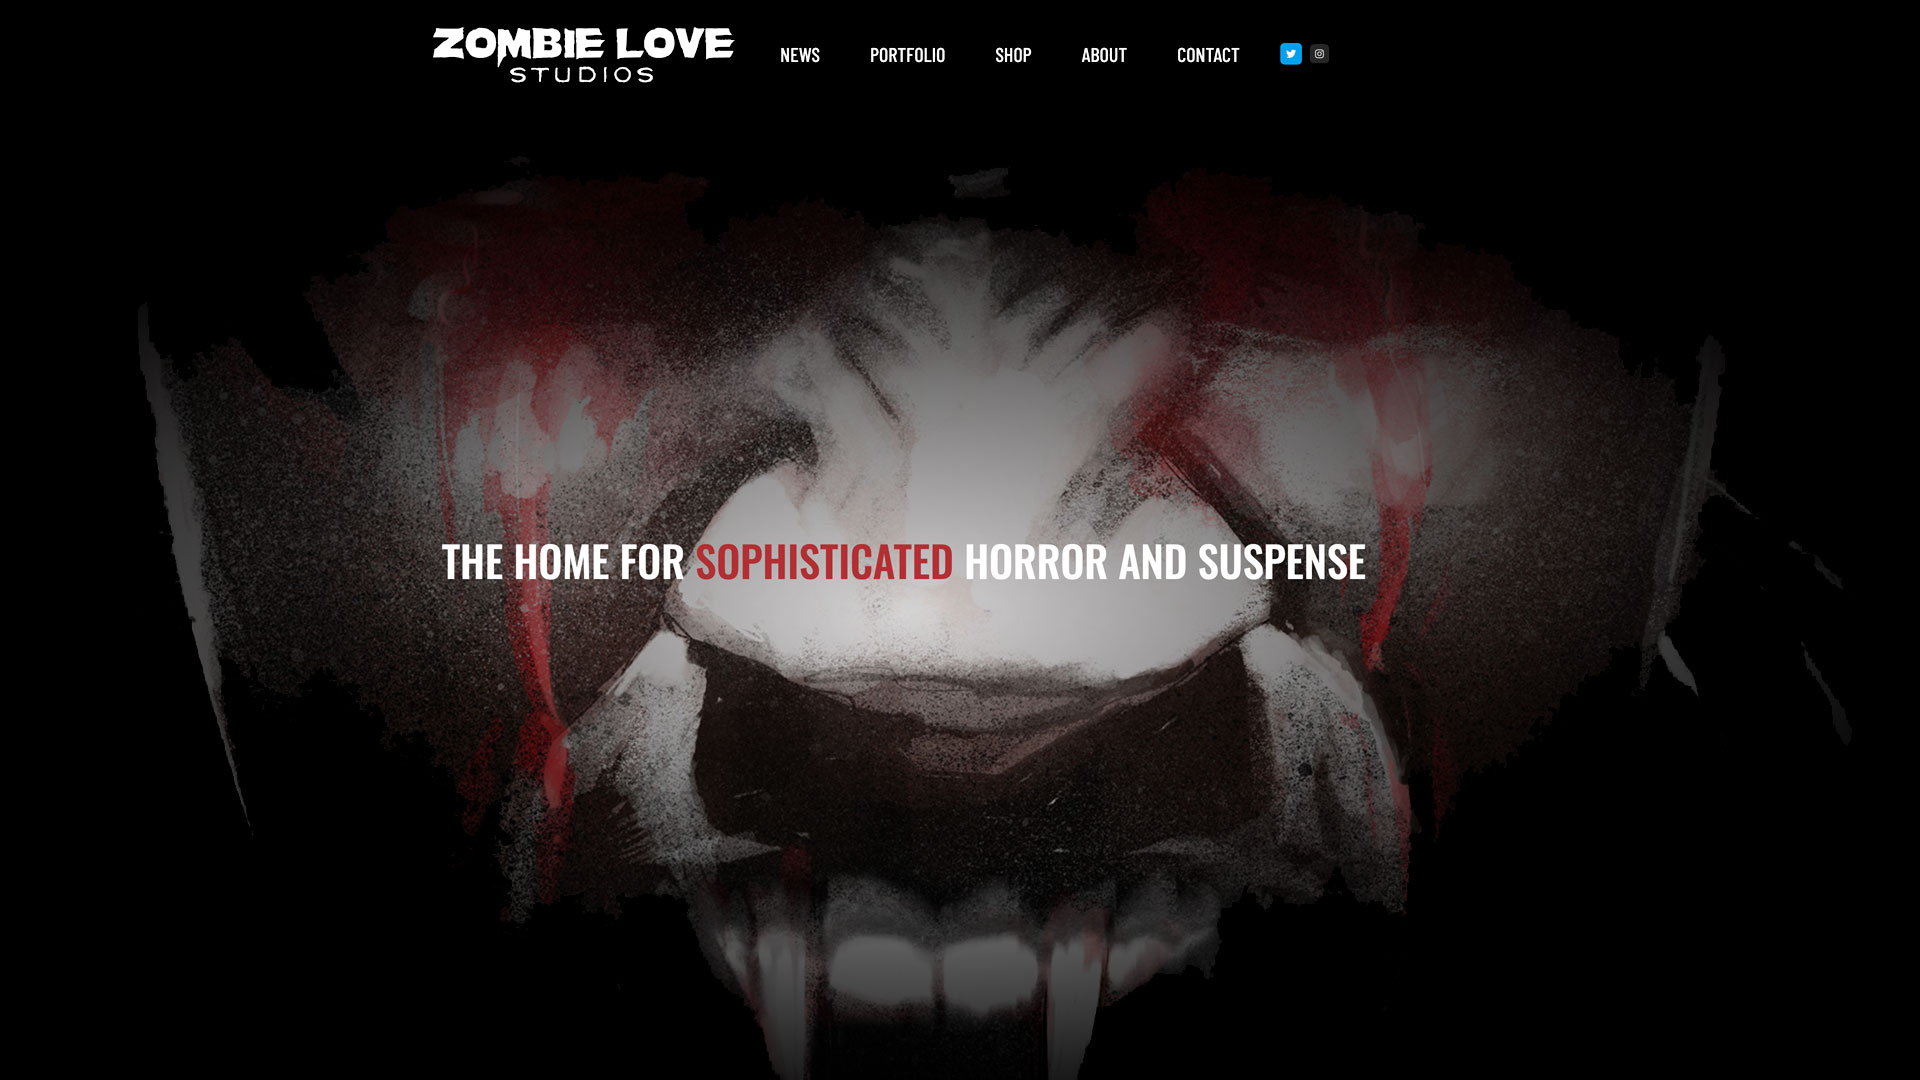 Zombie Love Studios